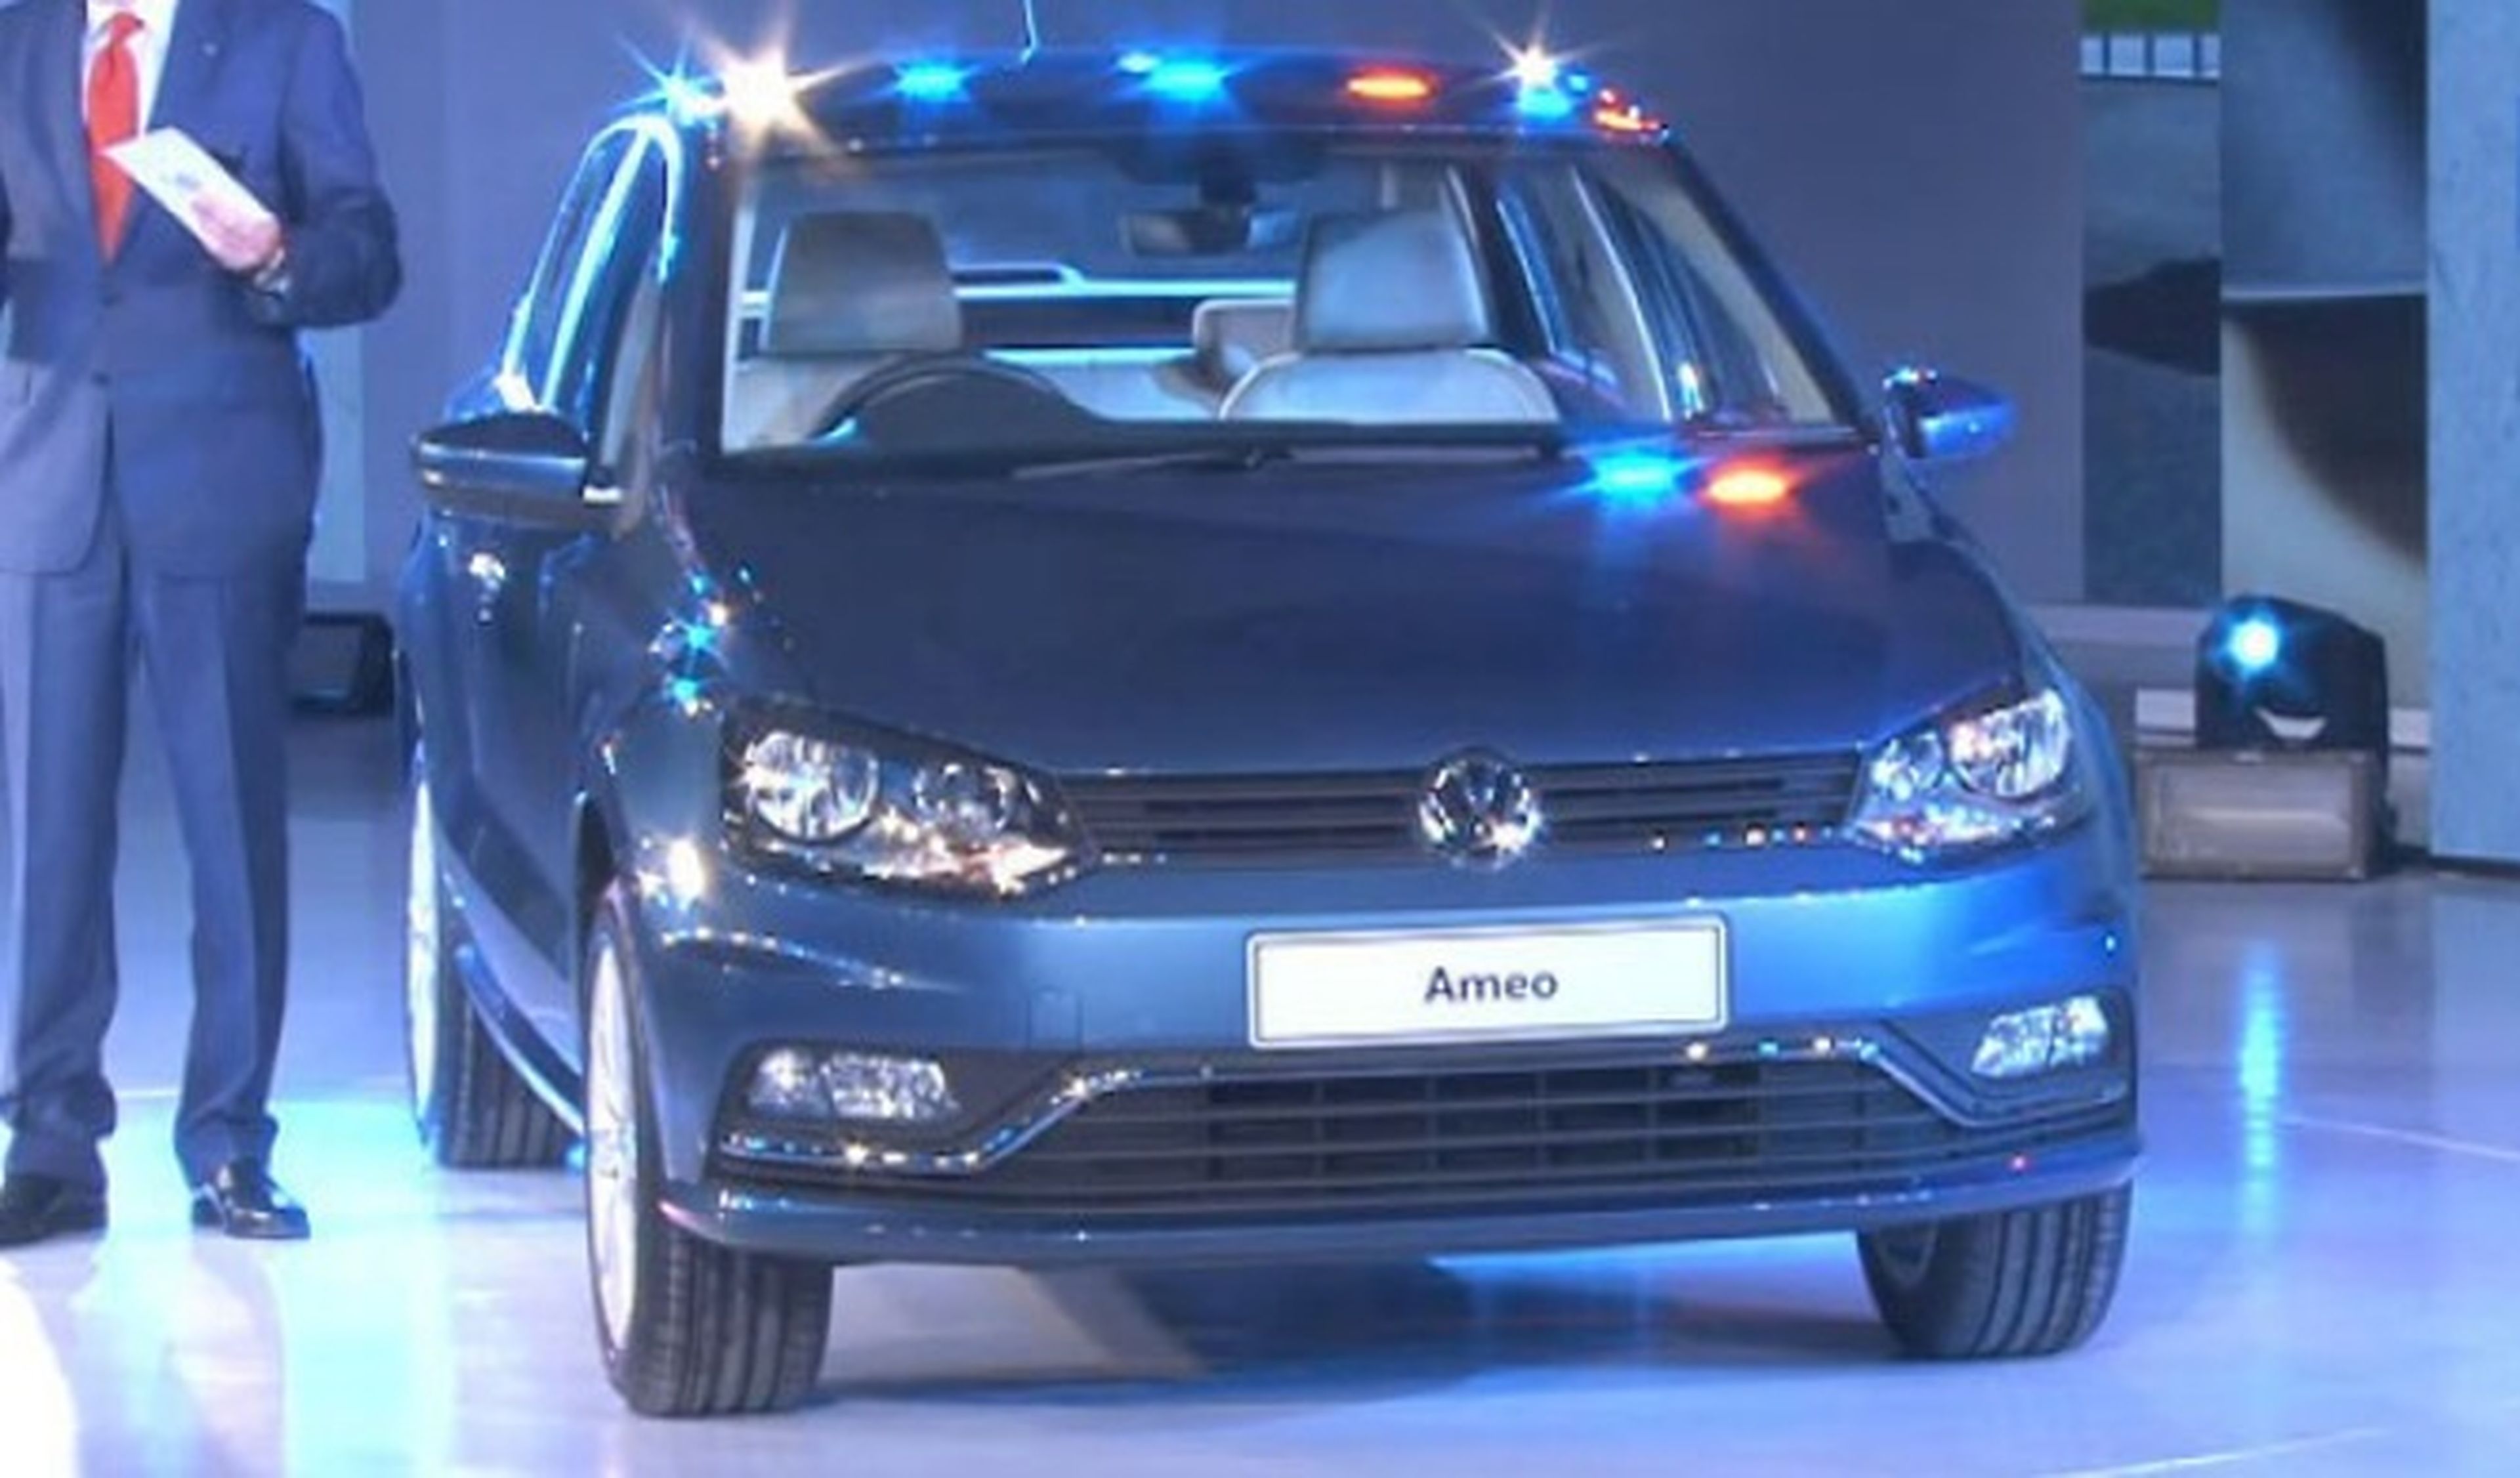 Presentado el nuevo Volkswagen Ameo